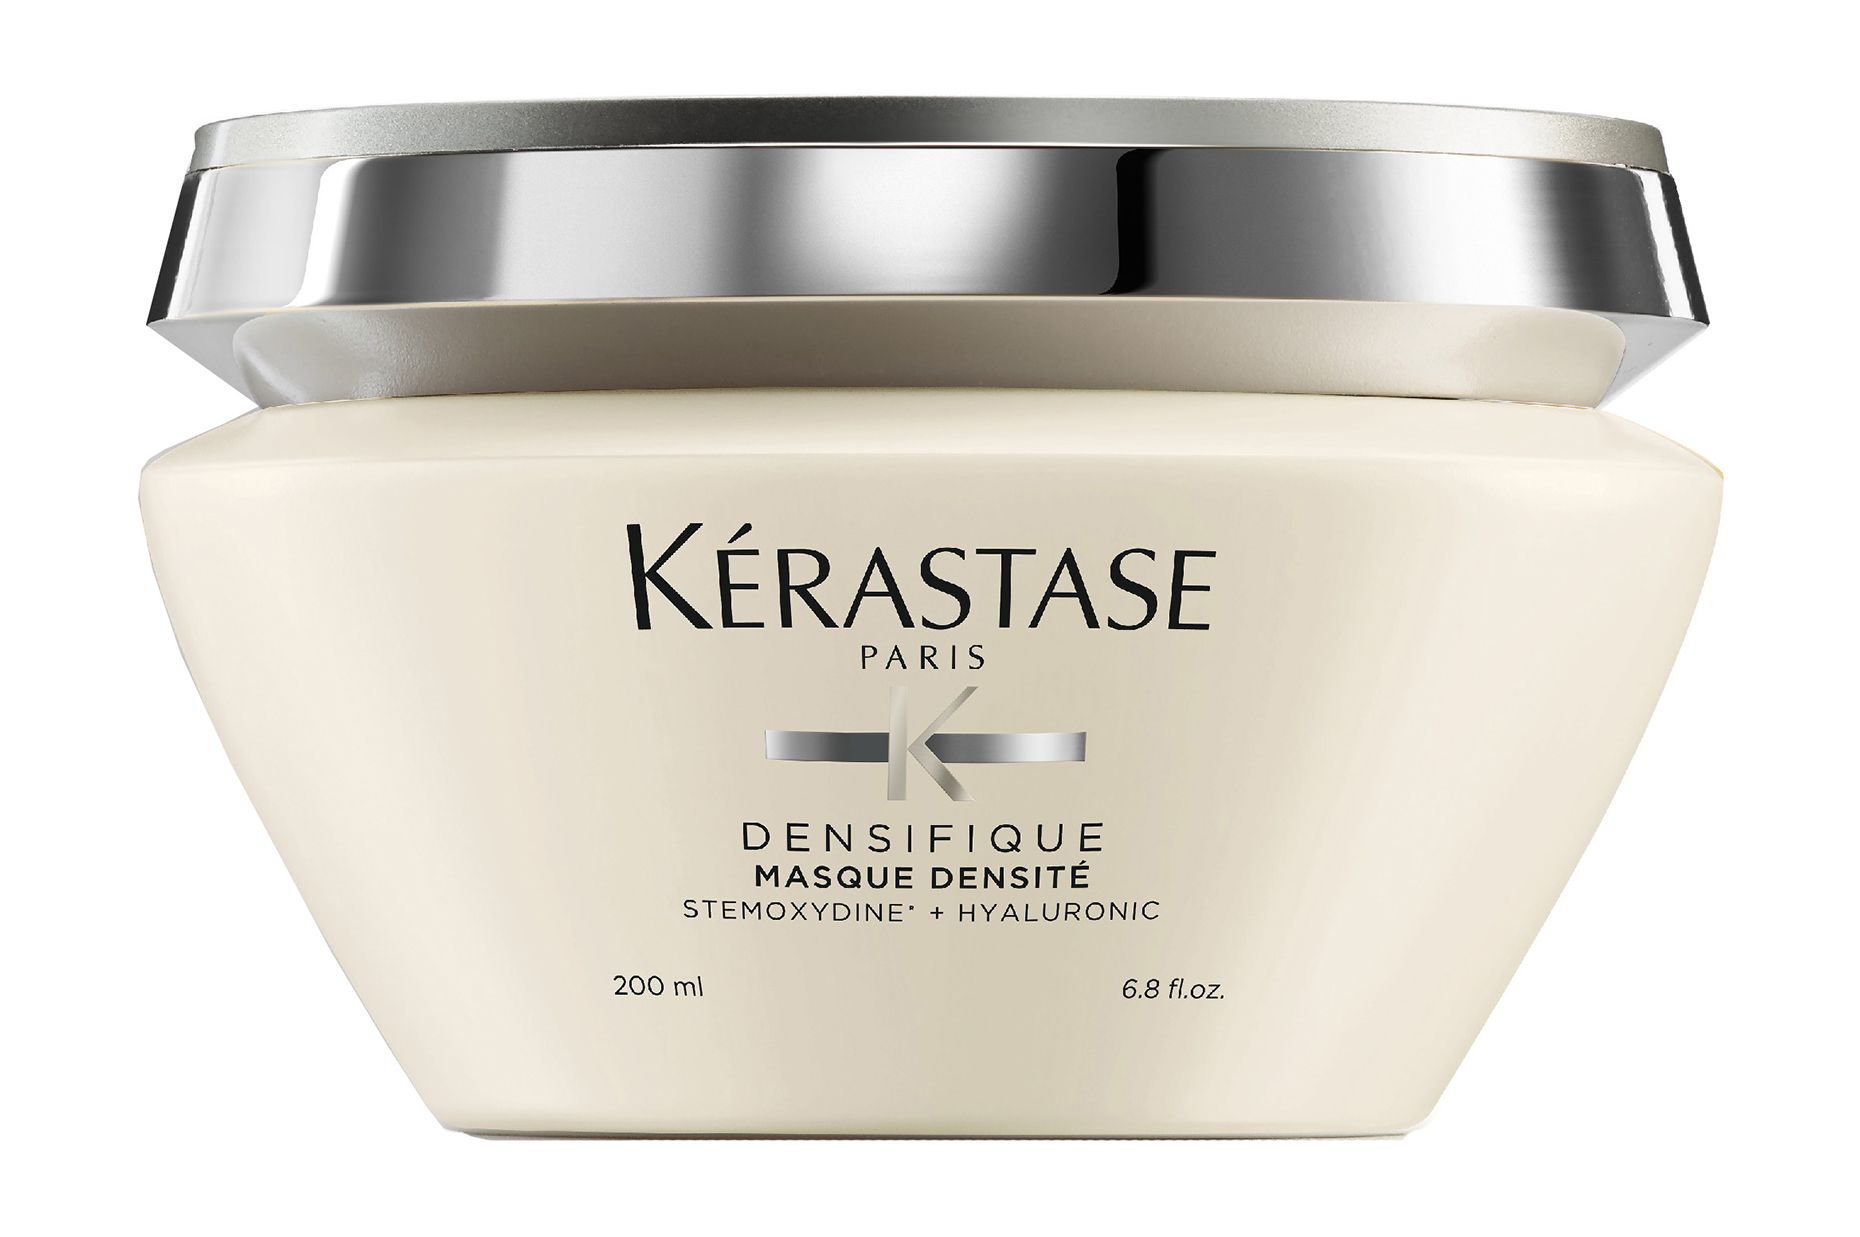 Kerastase densifique densite маска для повышения густоты волос